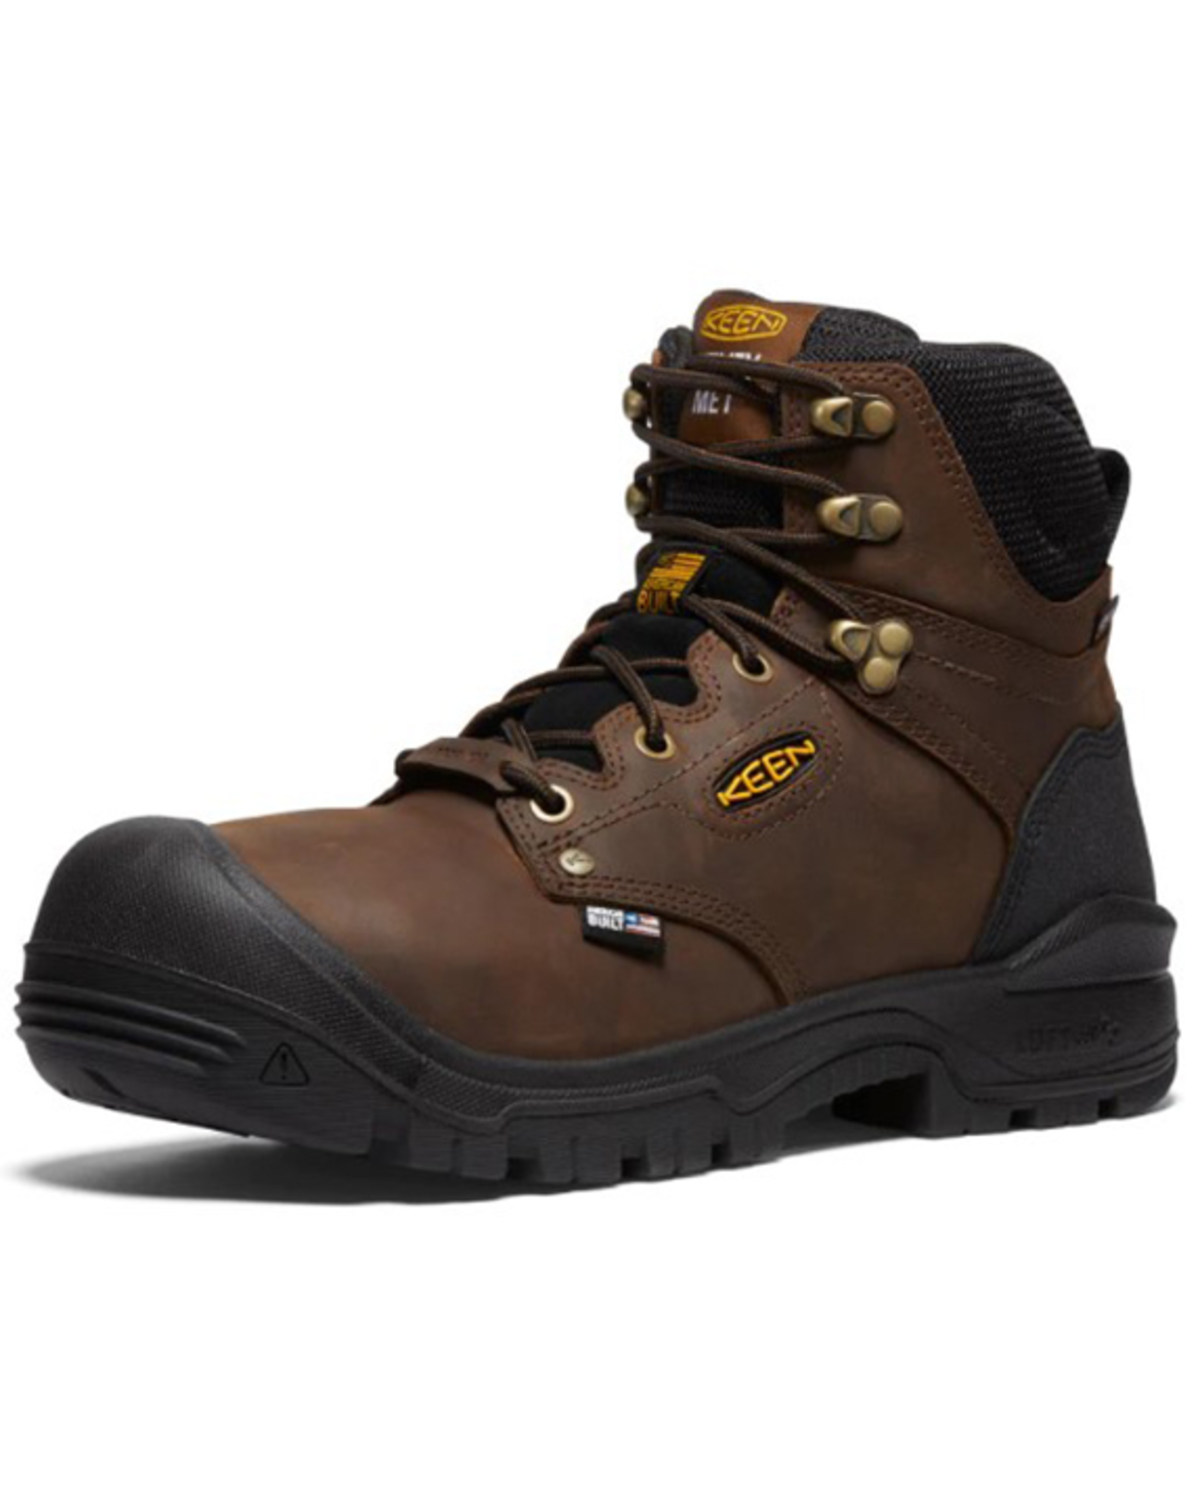 Keen Men's 6" Independence Waterproof Work Boots - Composite Toe